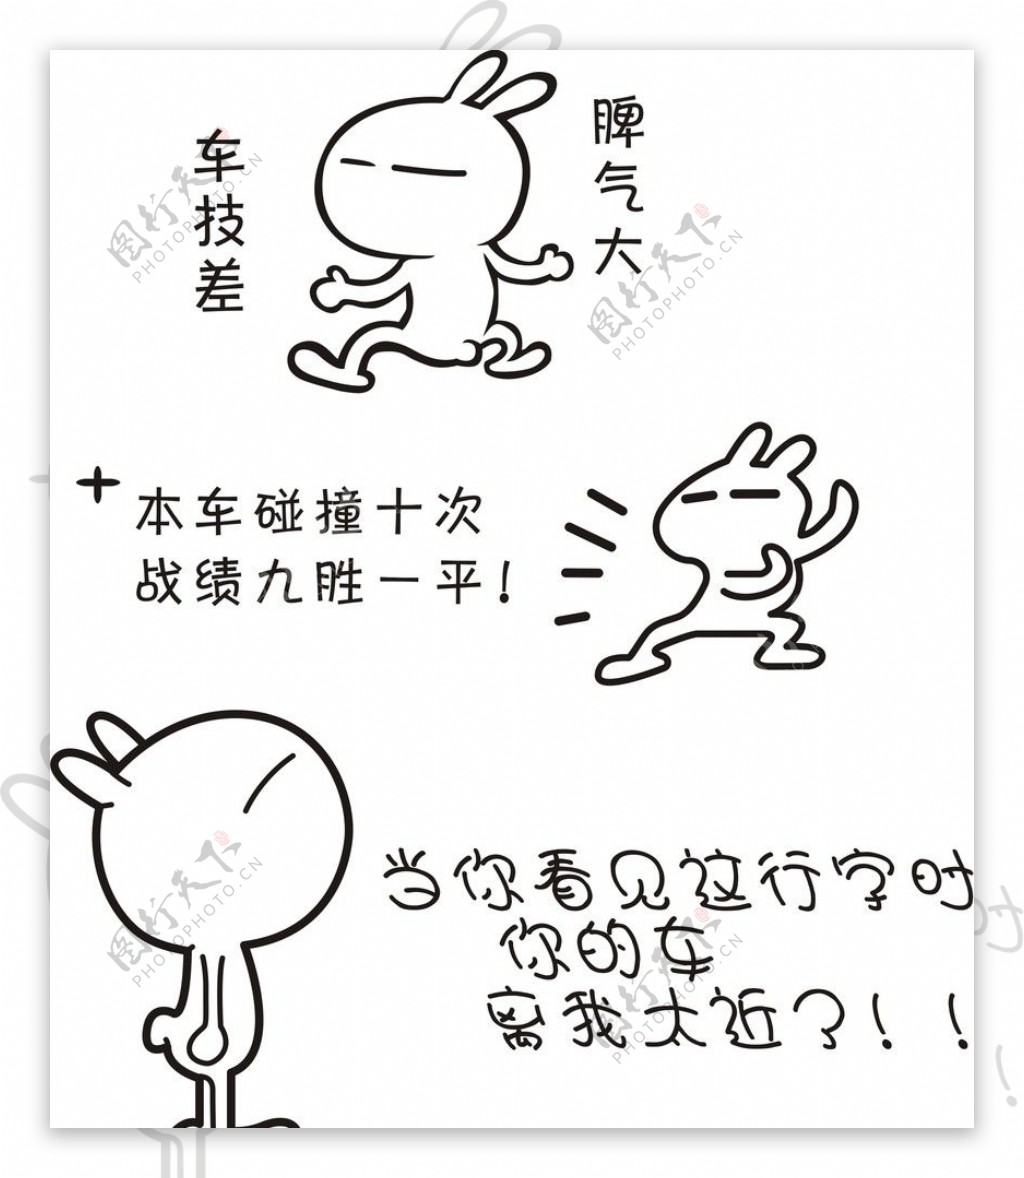 兔斯基卡通壁纸三_兔斯基卡通壁纸三软件截图 第9页-ZOL软件下载